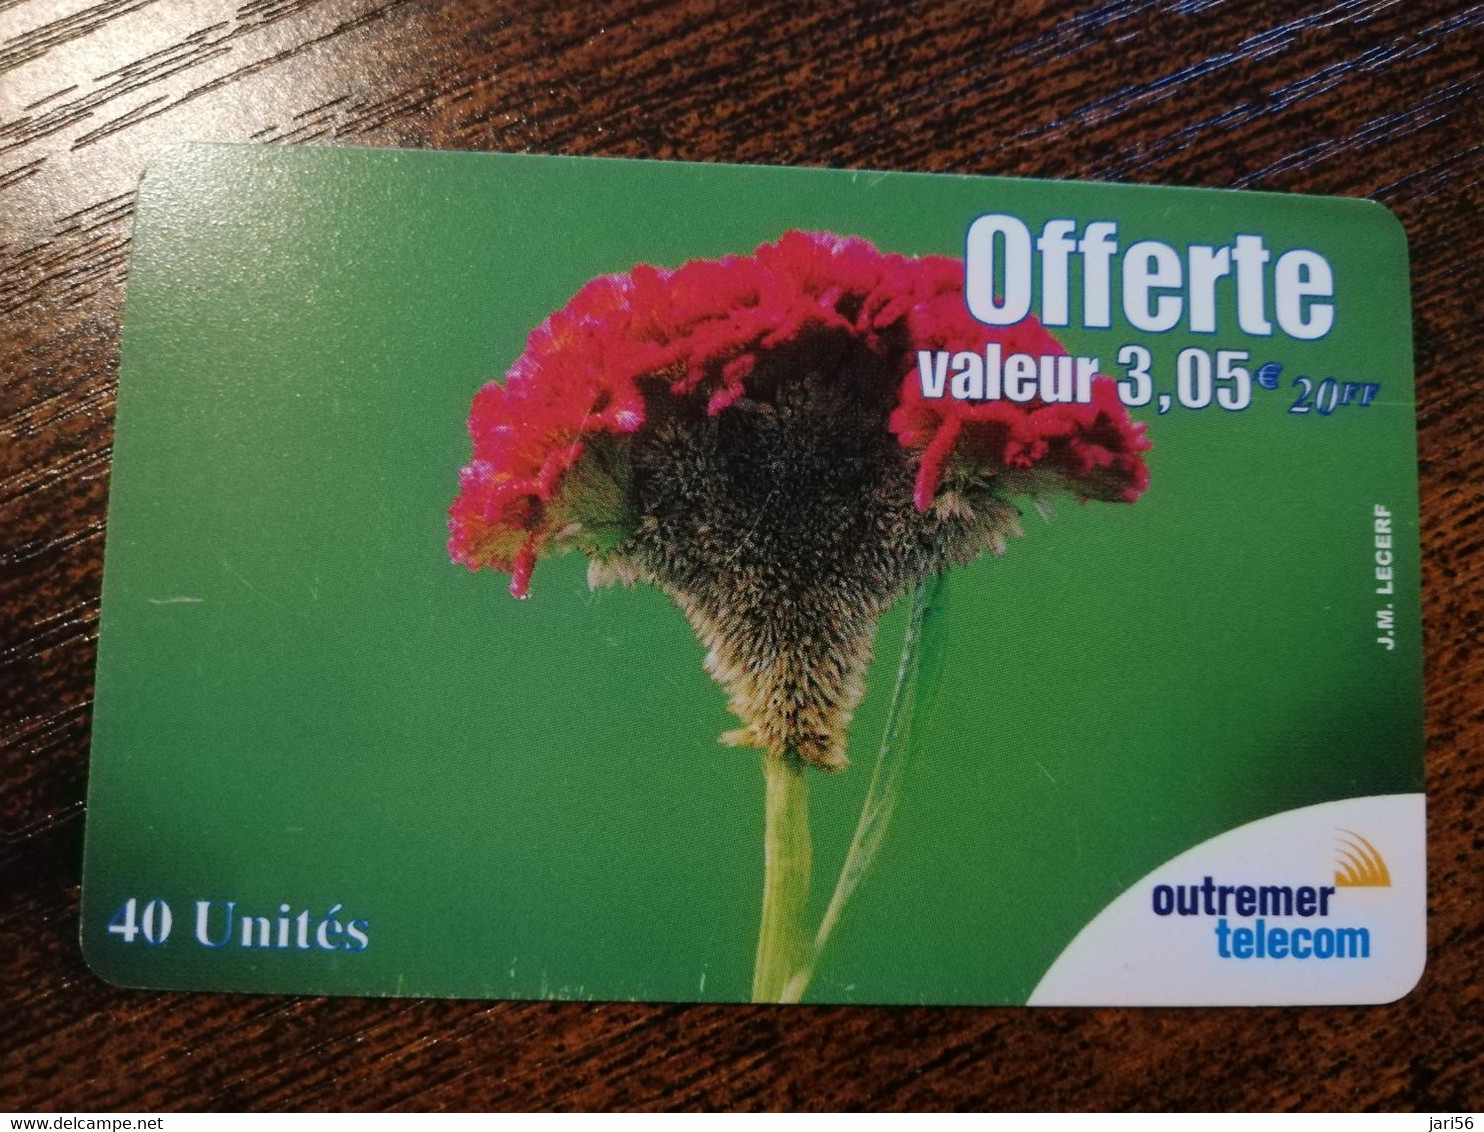 ST MARTIN  OUTREMER TELECOM/ 20FF OFFERTE  FLOWER     ** 6757 ** - Antillen (Frans)